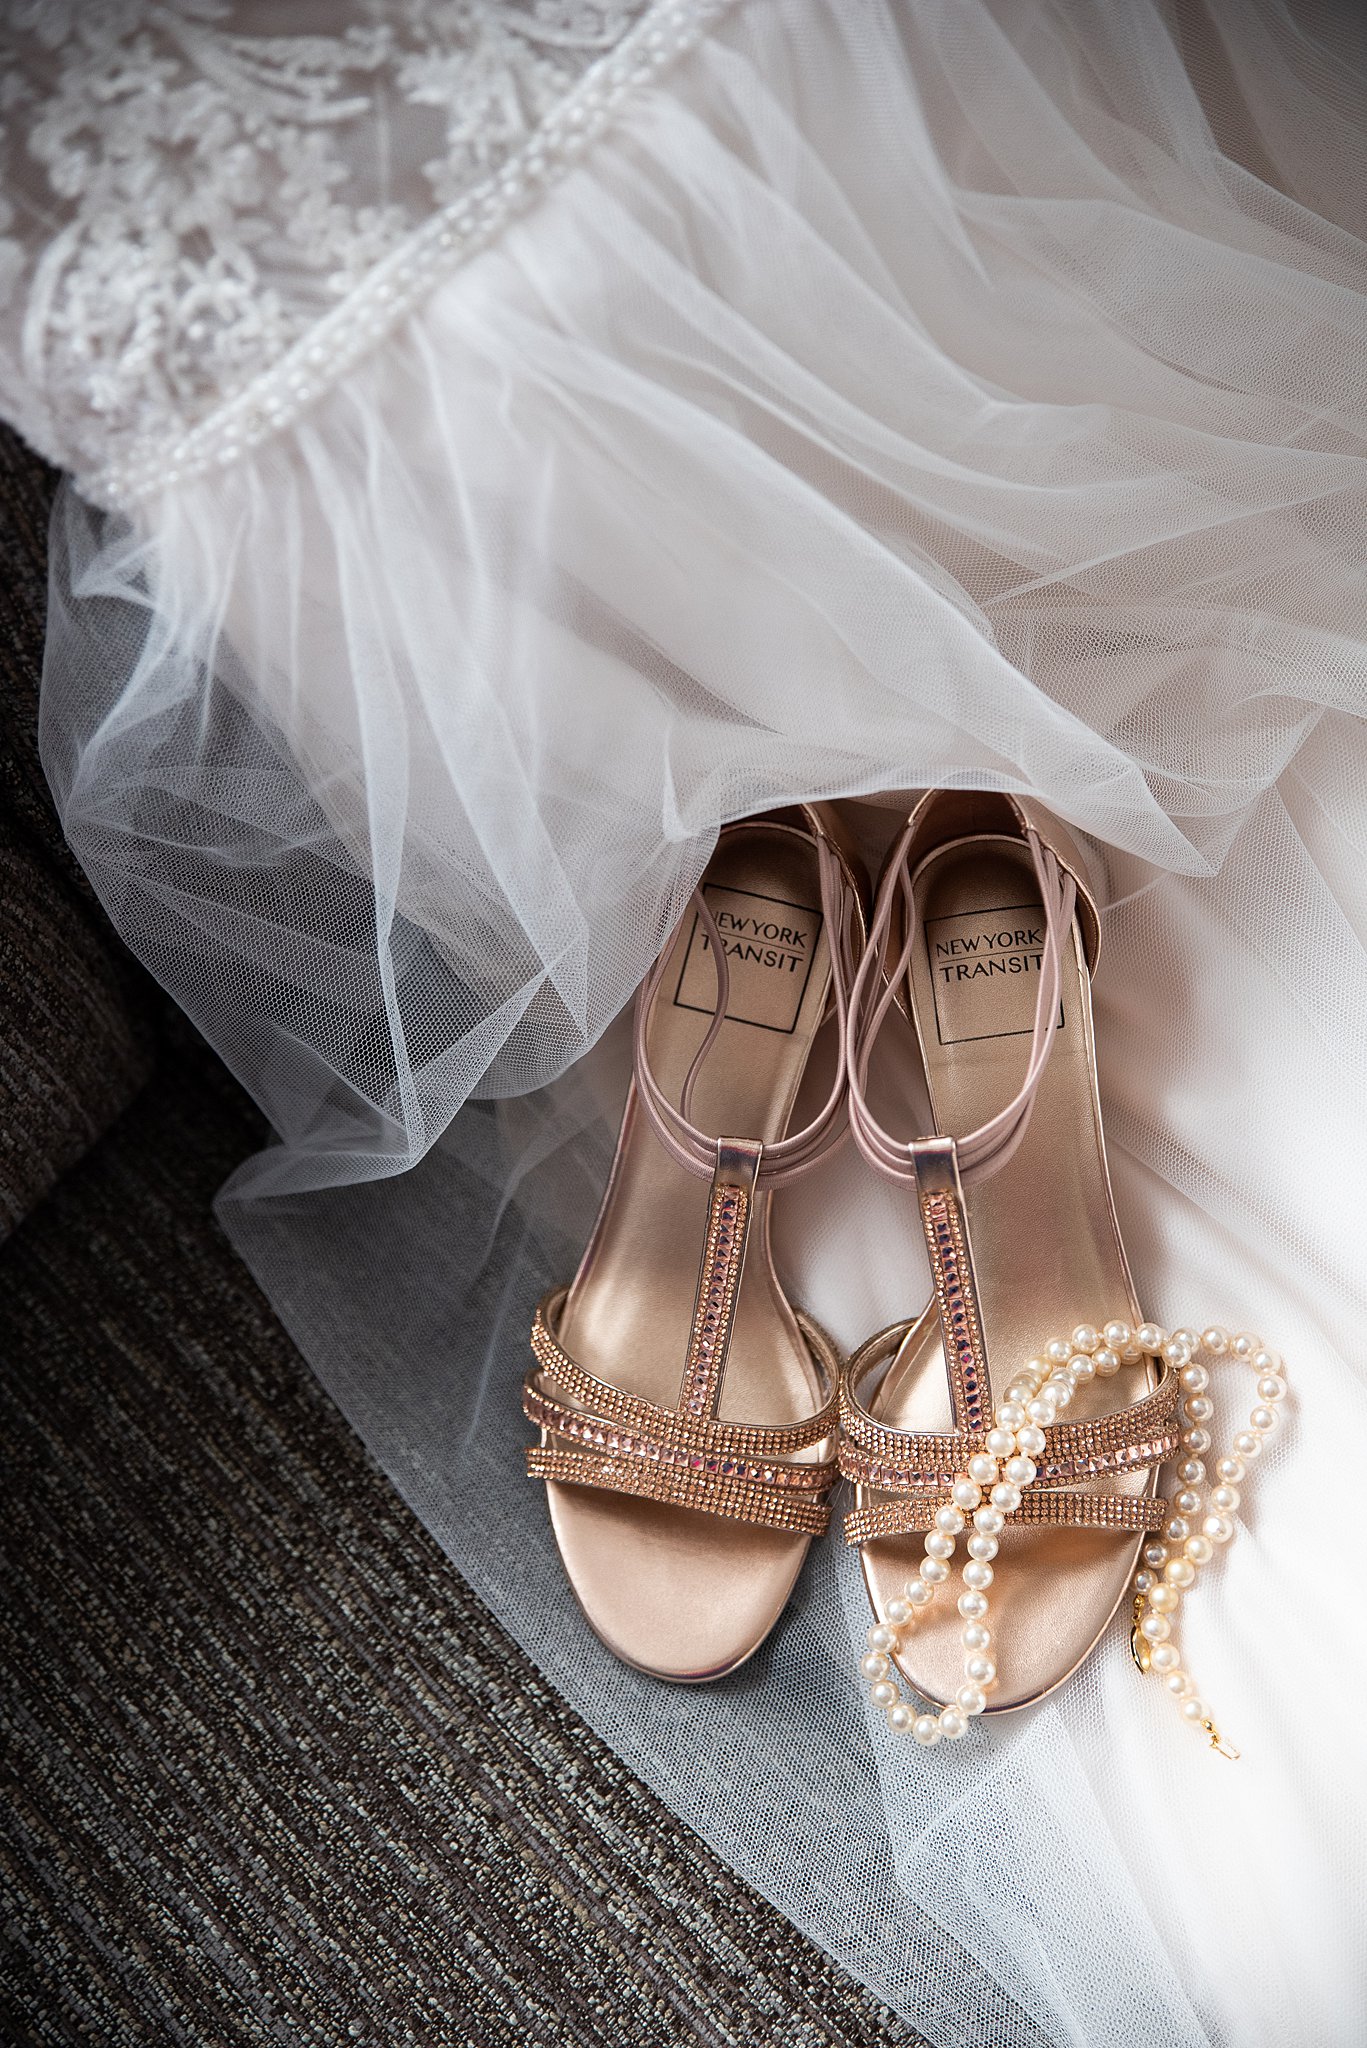 bride's heels on her wedding veil